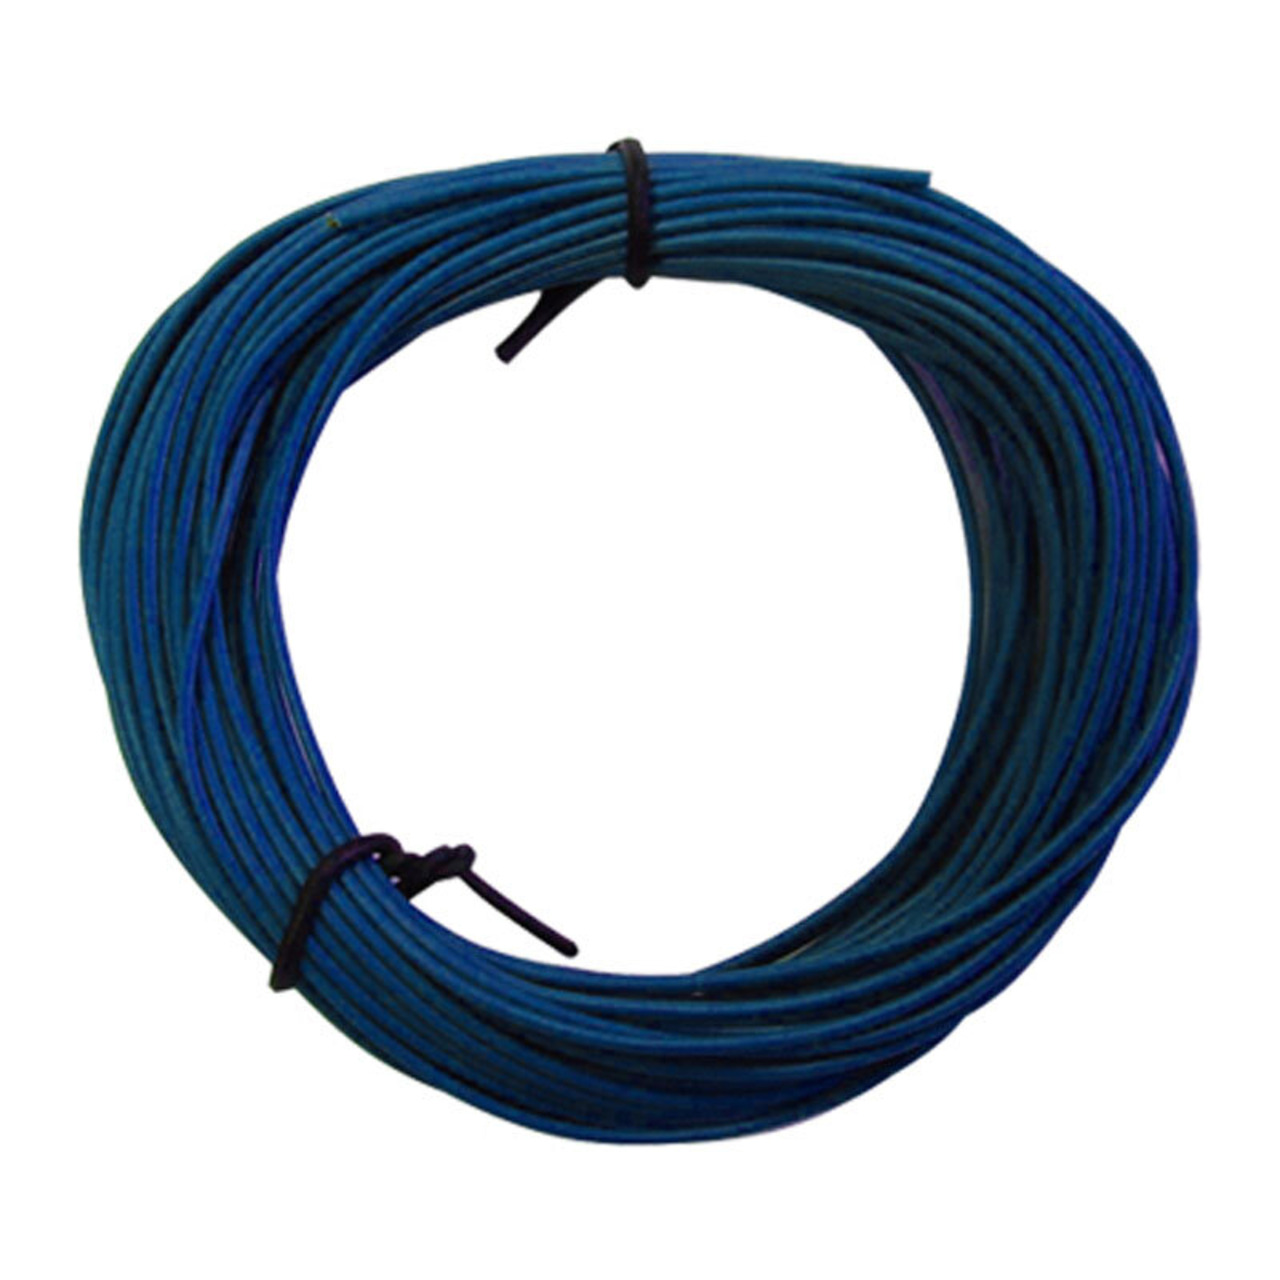 Schaltlitze LiY 1 x 0-14 mm- blau- 10 m